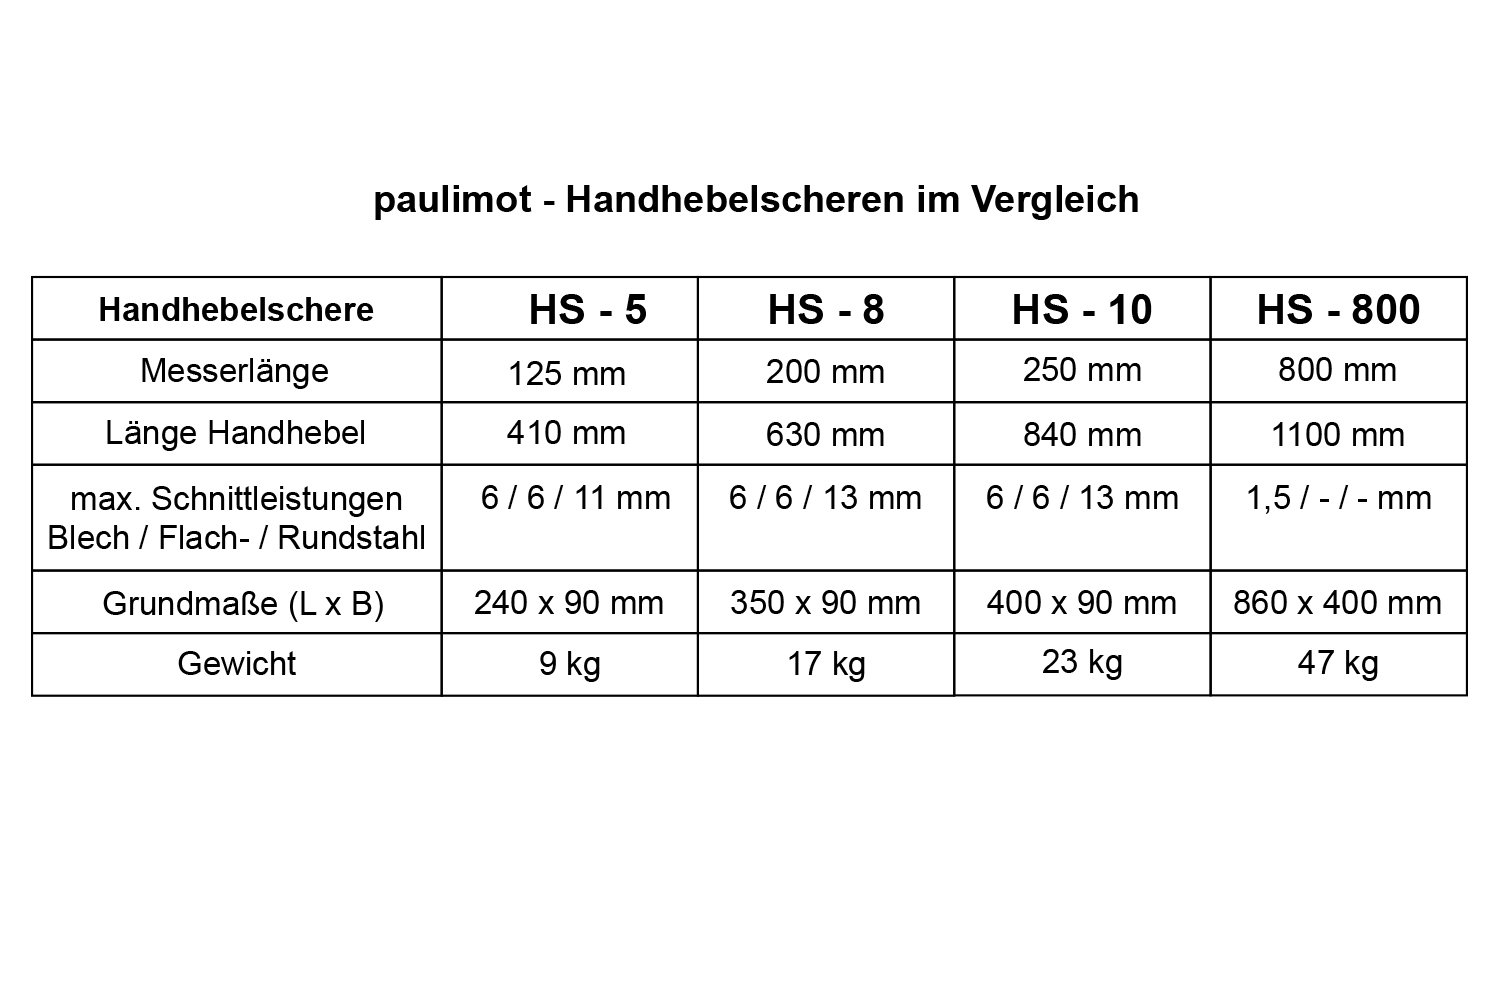 Handhebelschere 125 mm / HS - 5